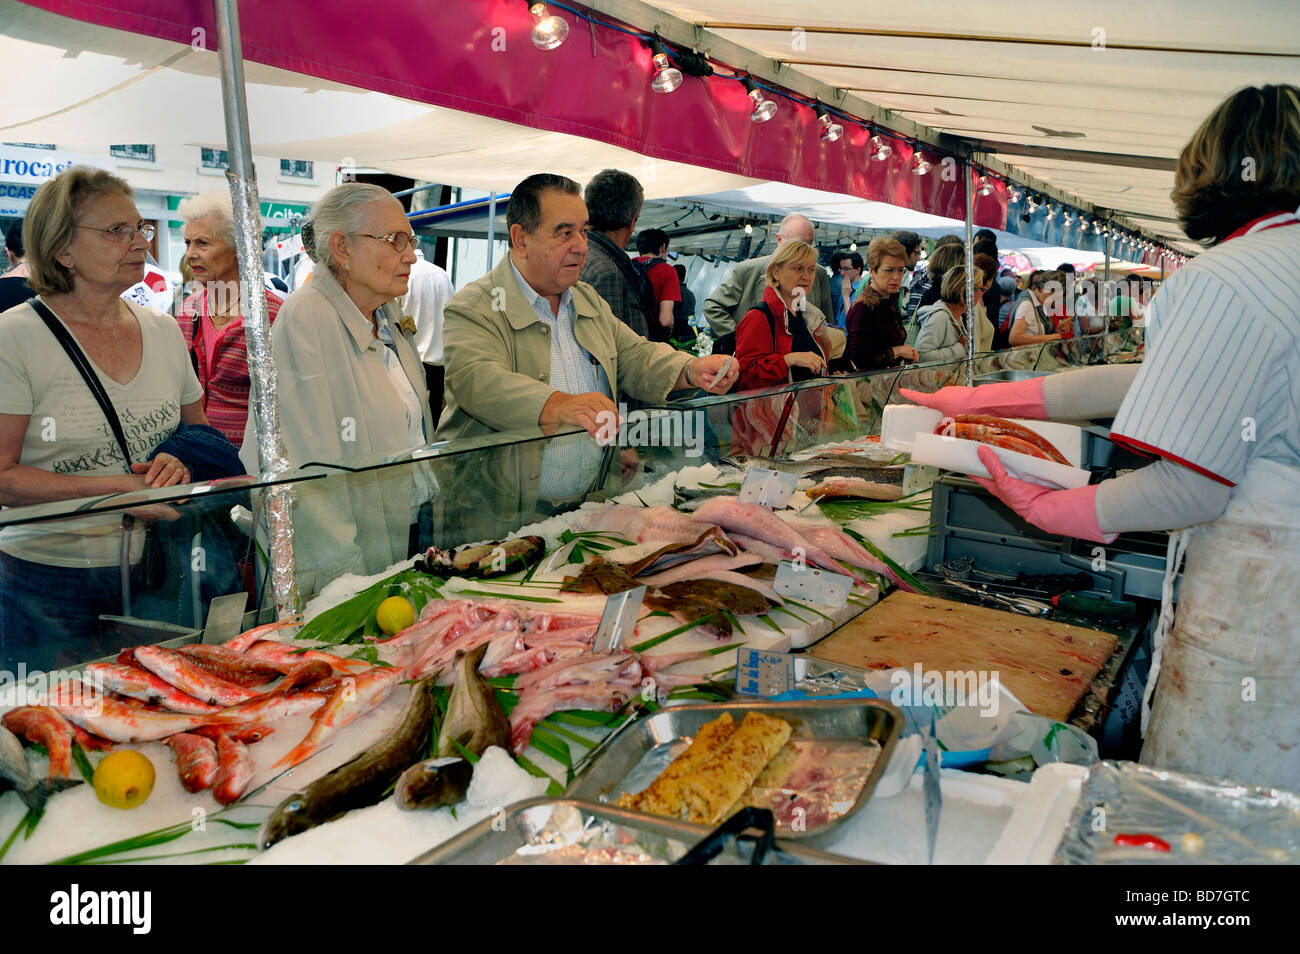 Paris France, seniors adultes, shopping dans le marché extérieur de l'alimentation publique, Street Stall, Display, 'Fresh Fish' consommation locale Banque D'Images